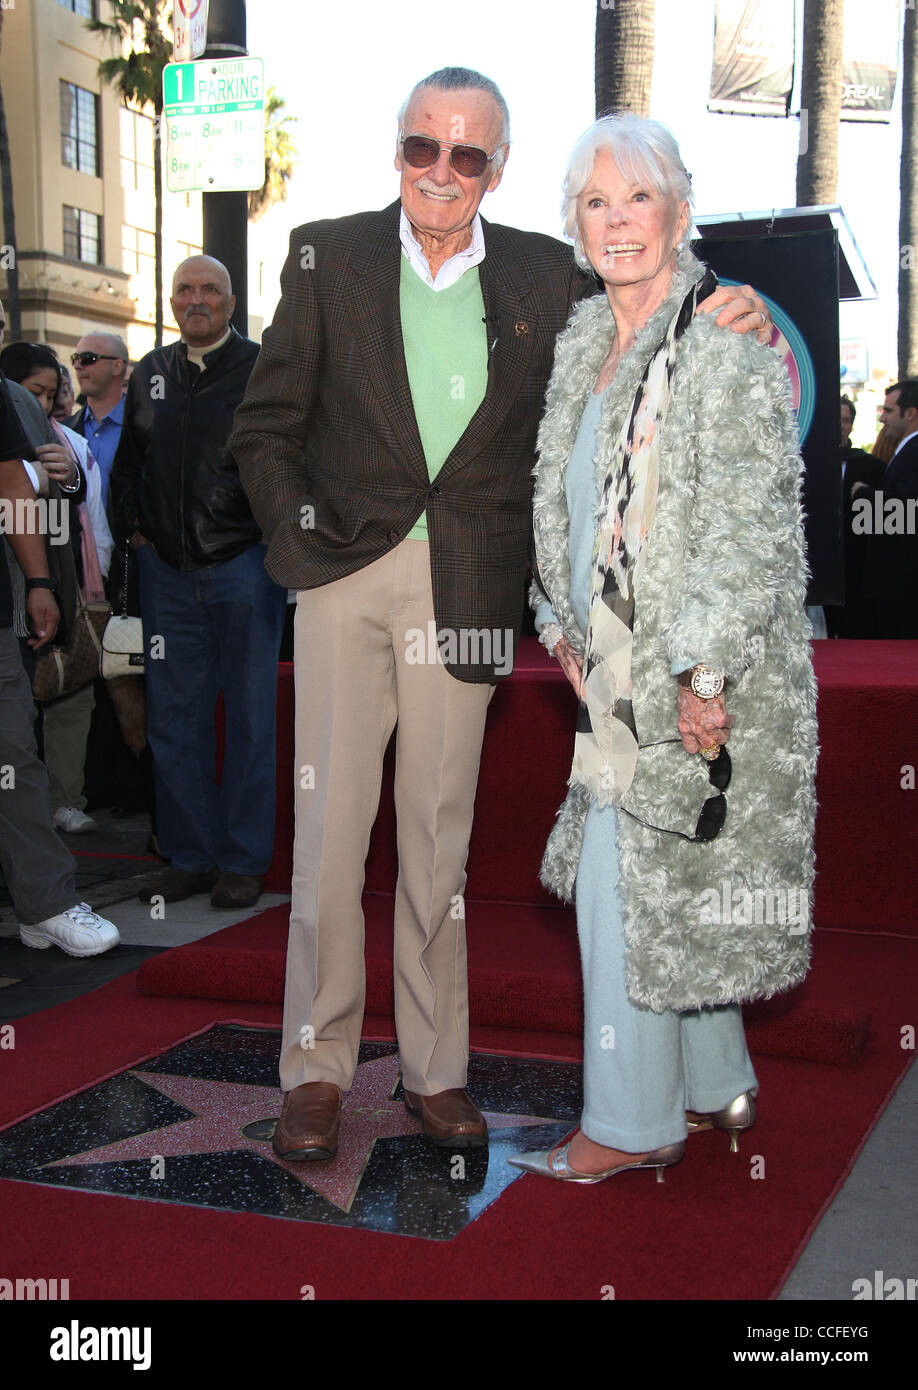 Le 4 janvier 2011 - Hollywood, Californie, États-Unis - Stan Lee reçoit une étoile sur le Walk of Fame. (Crédit Image : © Lisa O'Connor/ZUMAPRESS.com) Banque D'Images